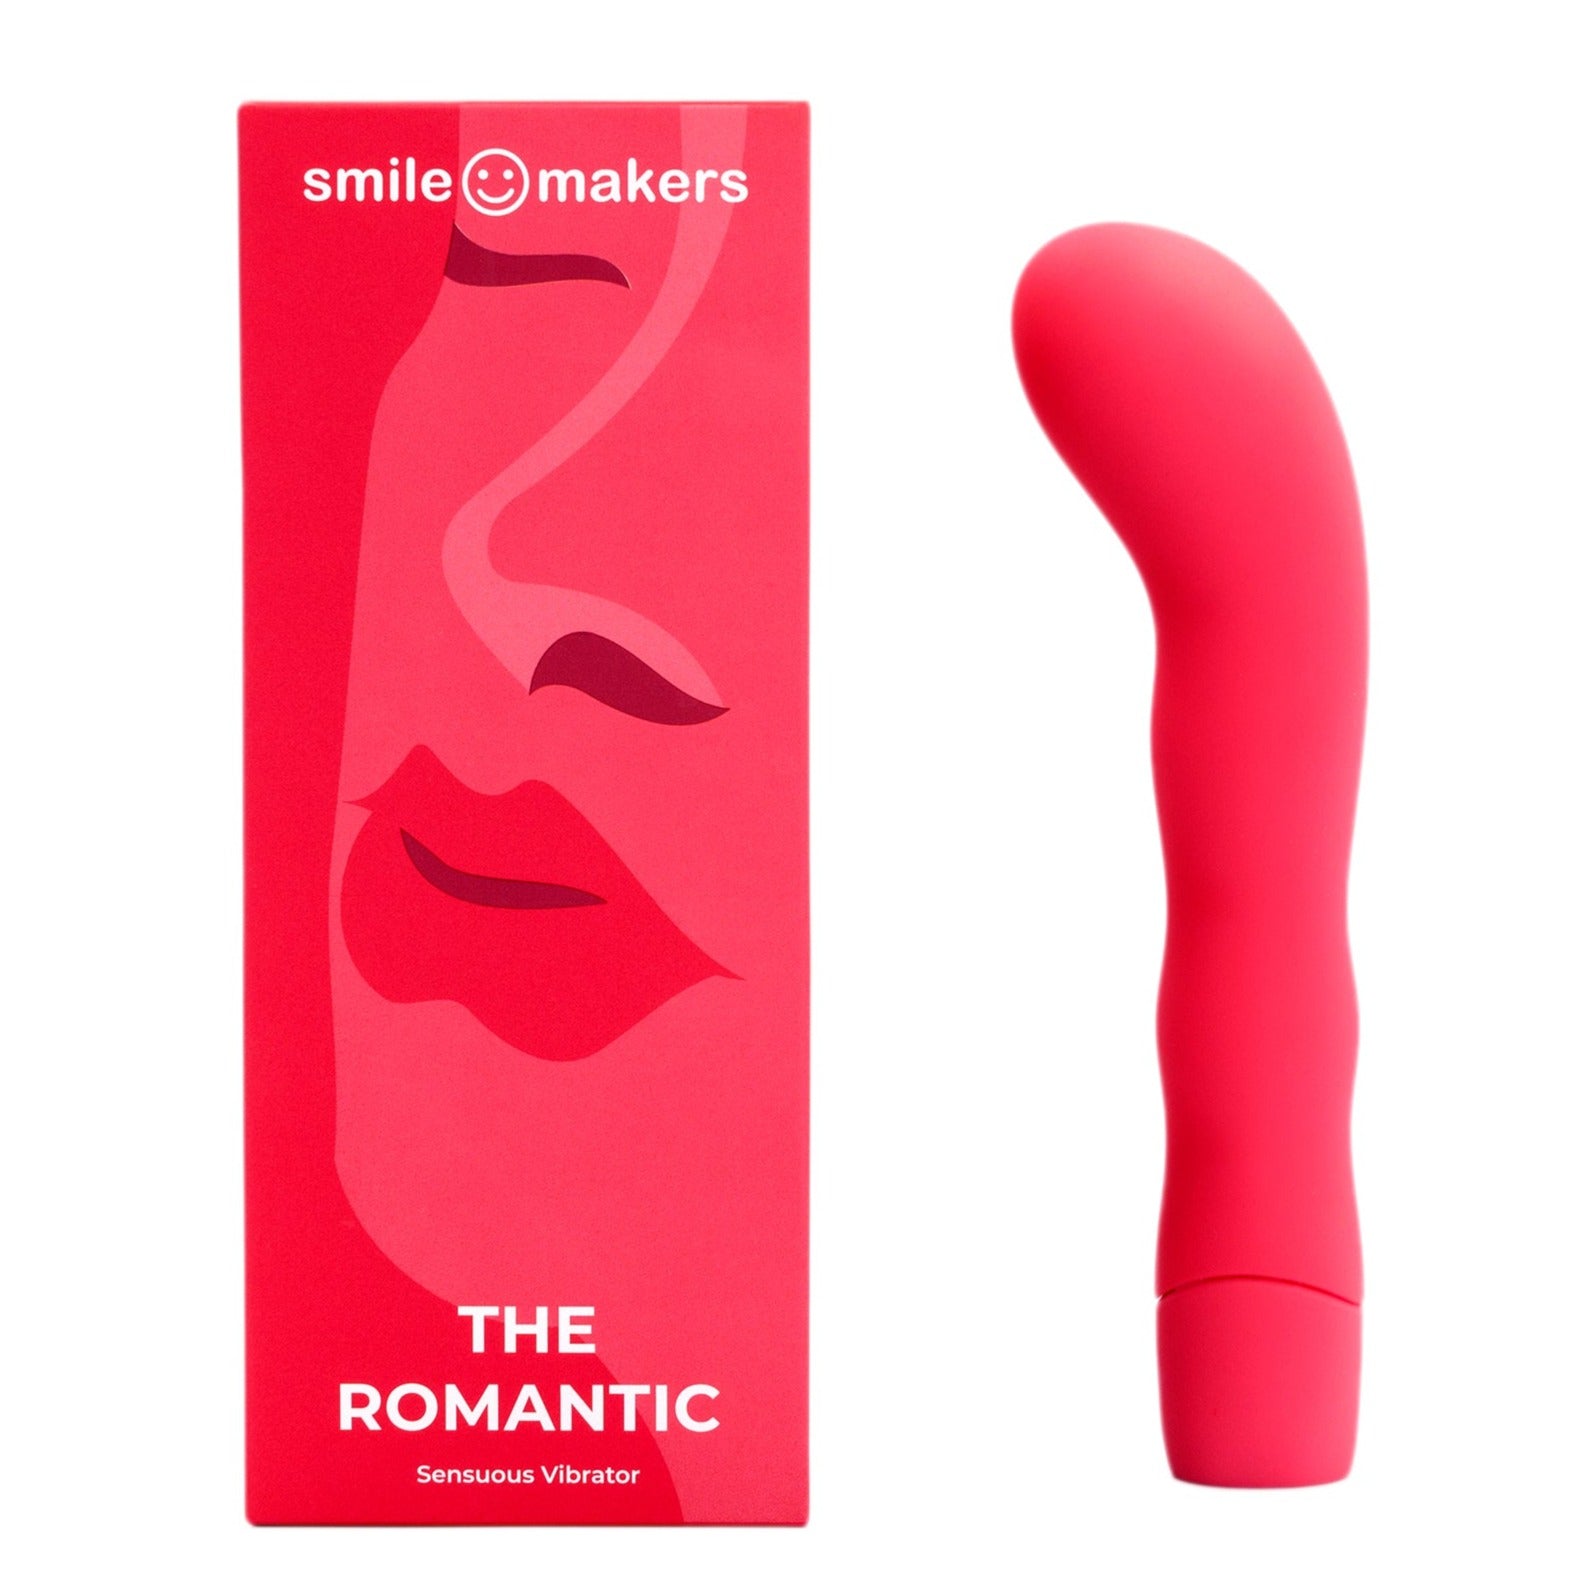 Smile Makers The Romantic - Intense G-Spot Vibrator